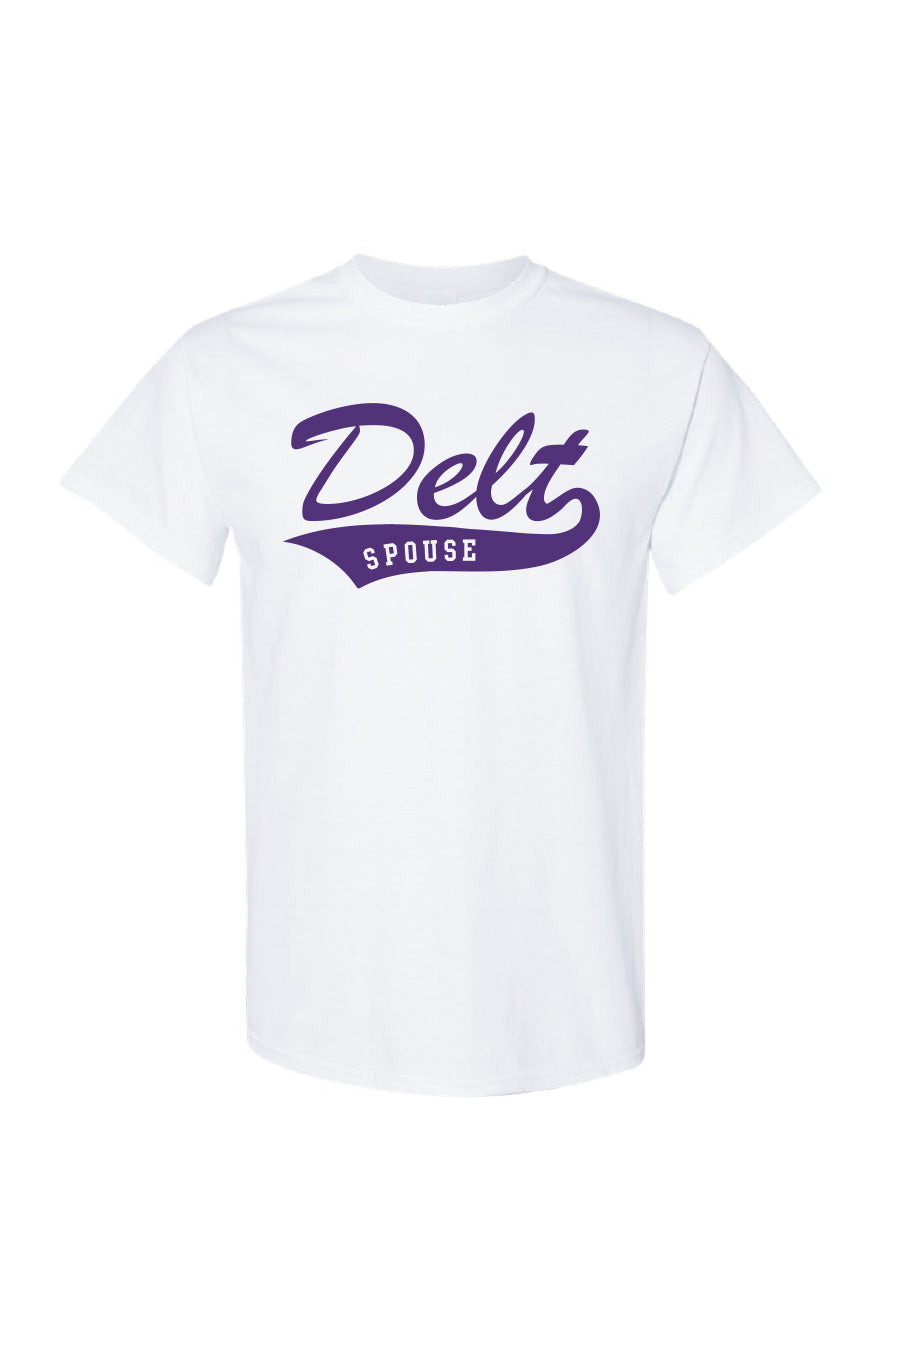 White and Purple Delt Spouse T-Shirt